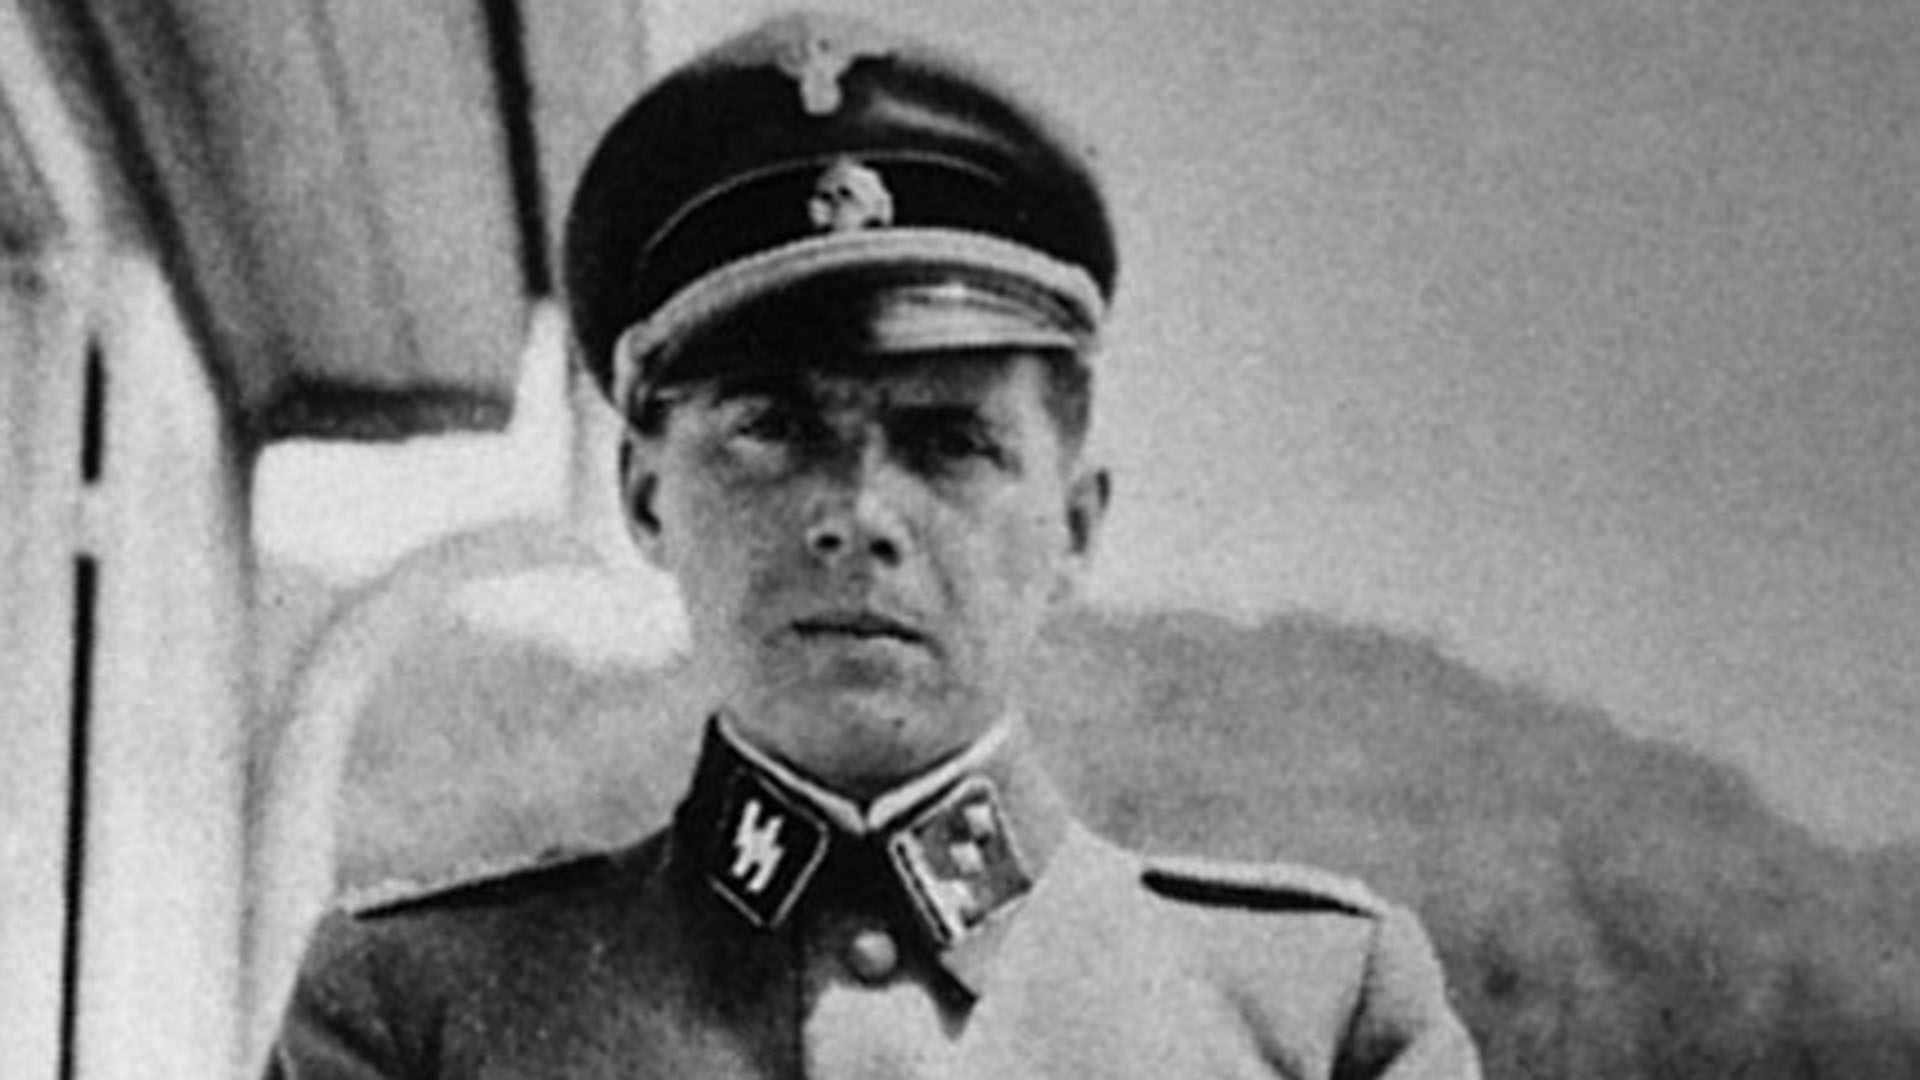 El “Ángel de la muerte” nazi que experimentó con seres humanos, Perón lo protegió y murió libre en una playa